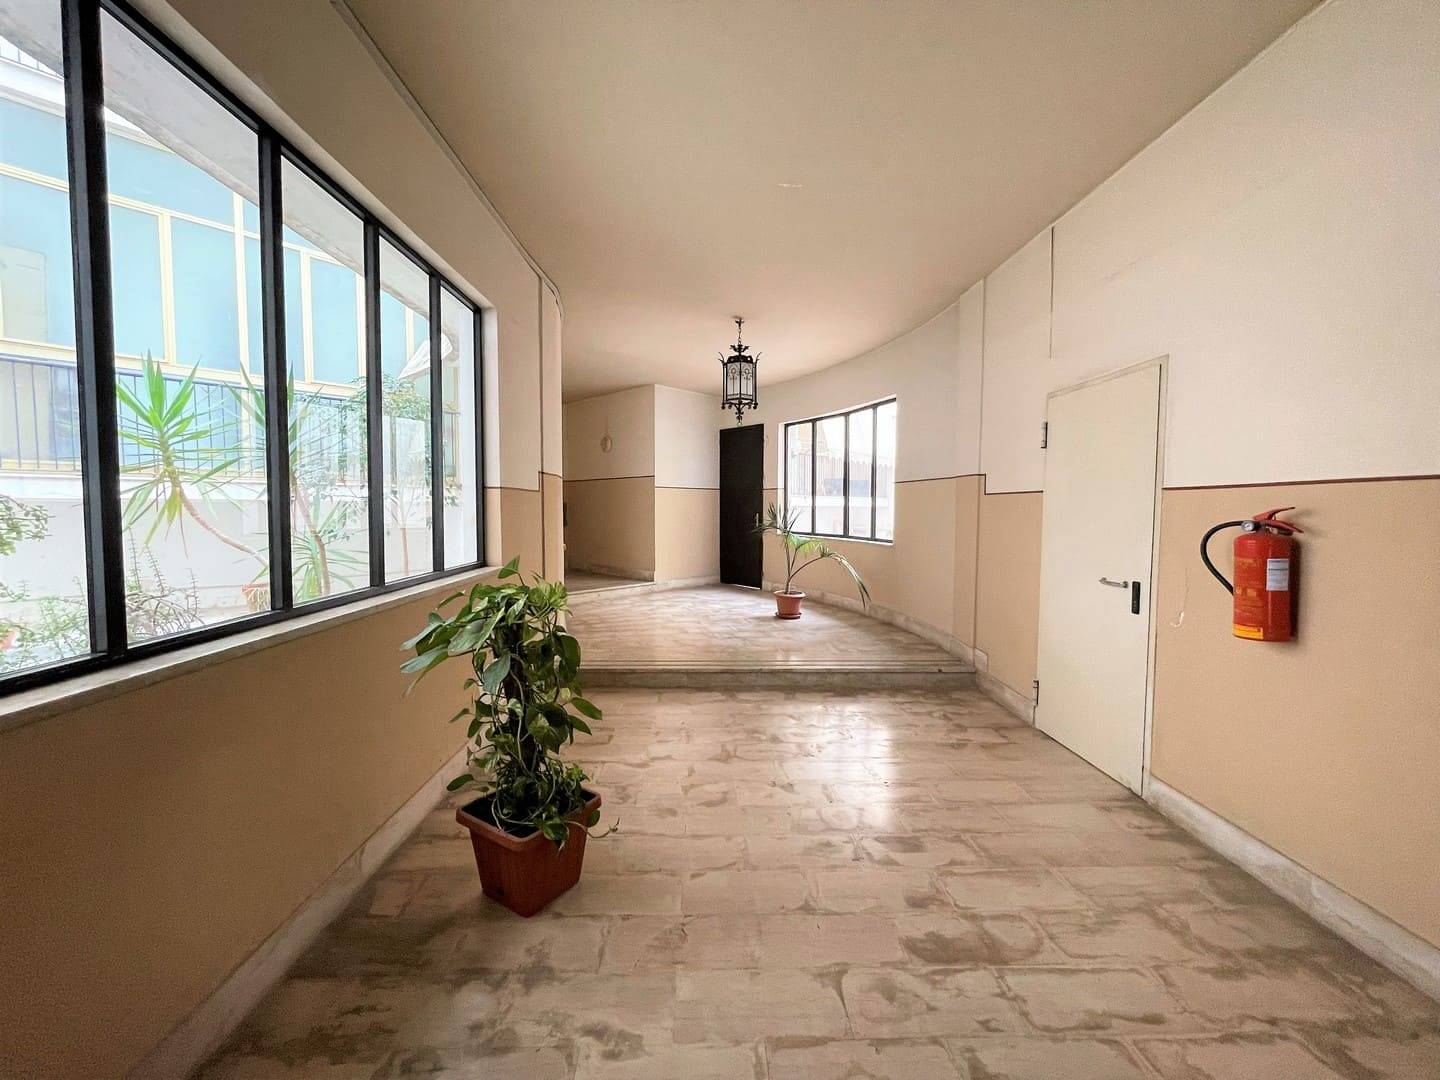 appartamento ristrutturato in vendita al viale tunisi siracusa